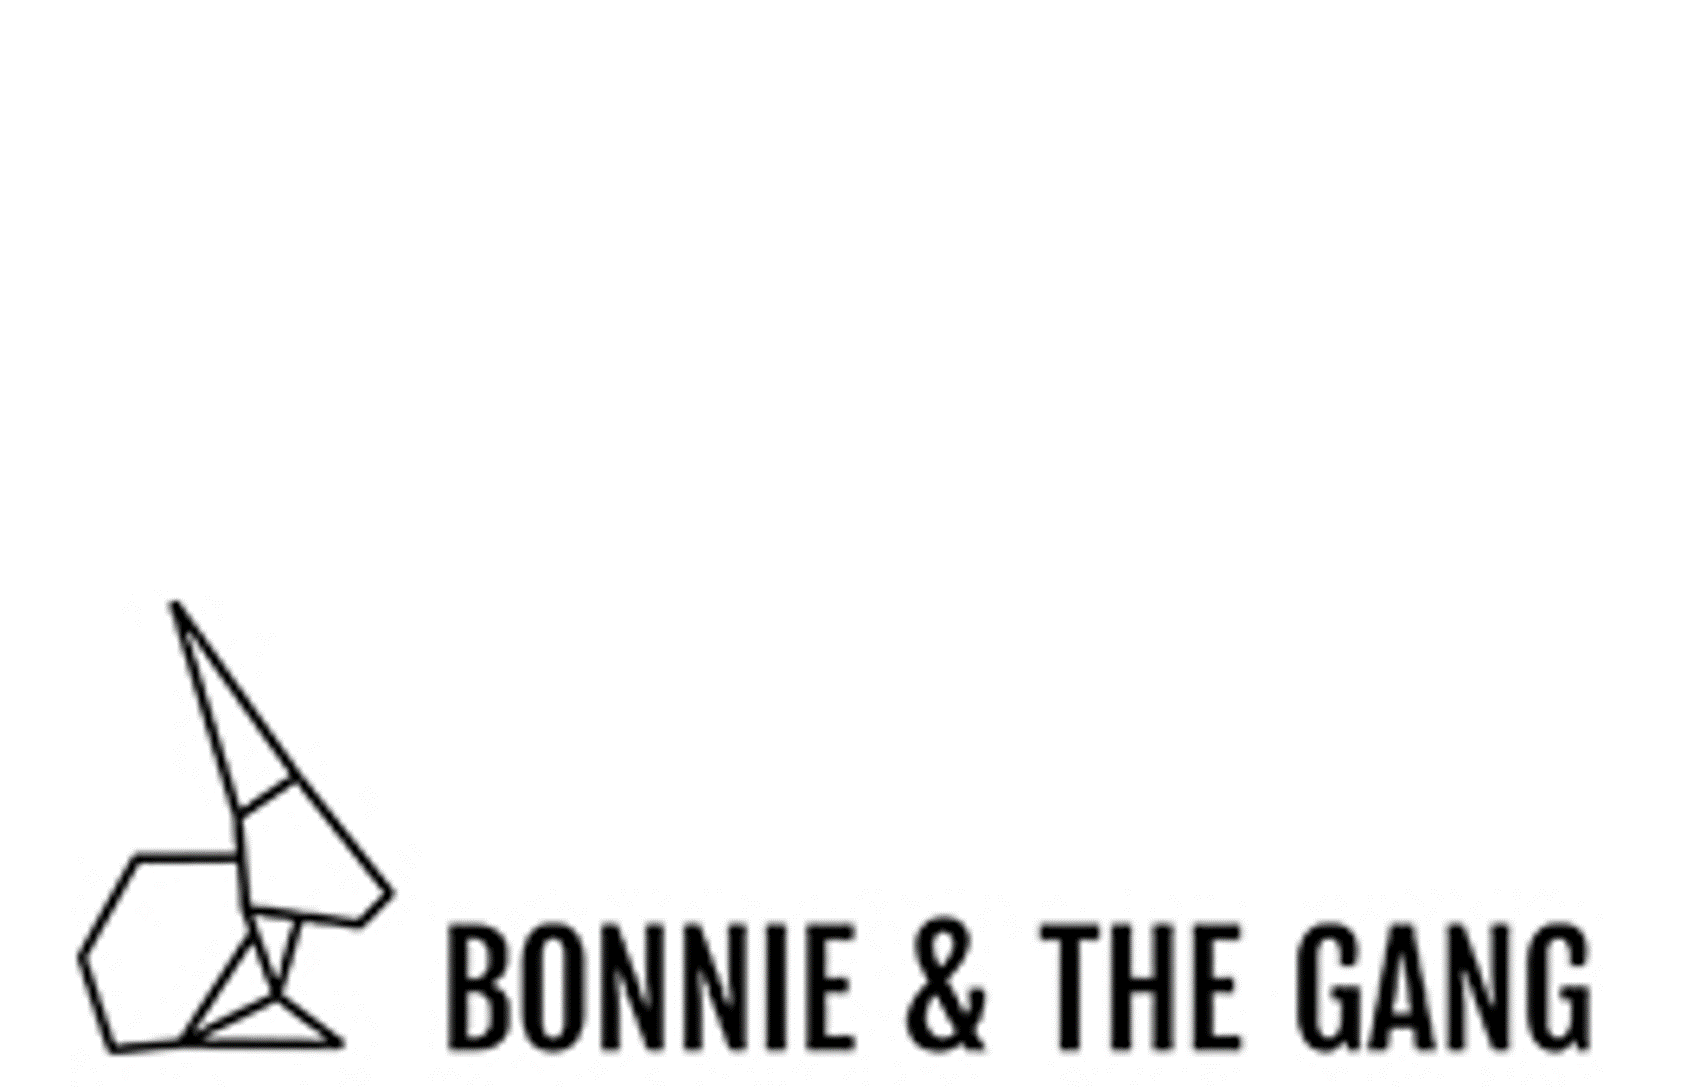 Bonnie & The Gang